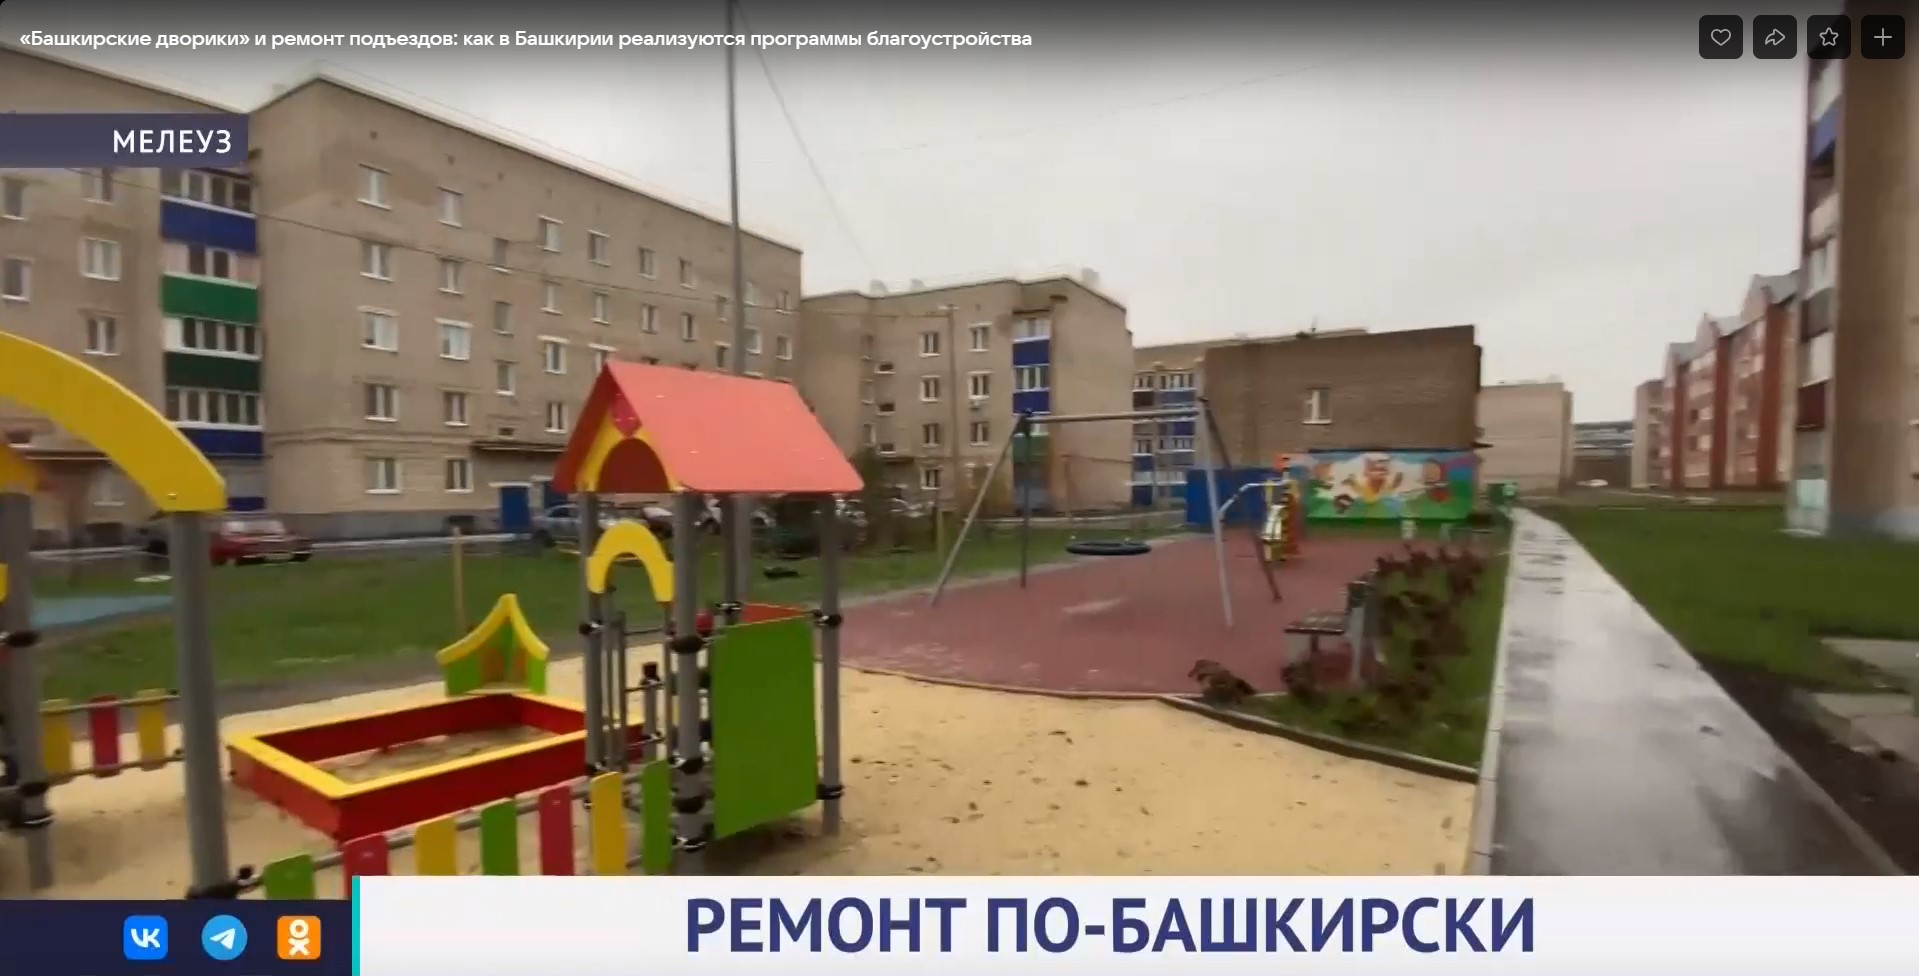 «Башкирские дворики» и ремонт подъездов: как в Башкортостане реализуются программы благоустройства